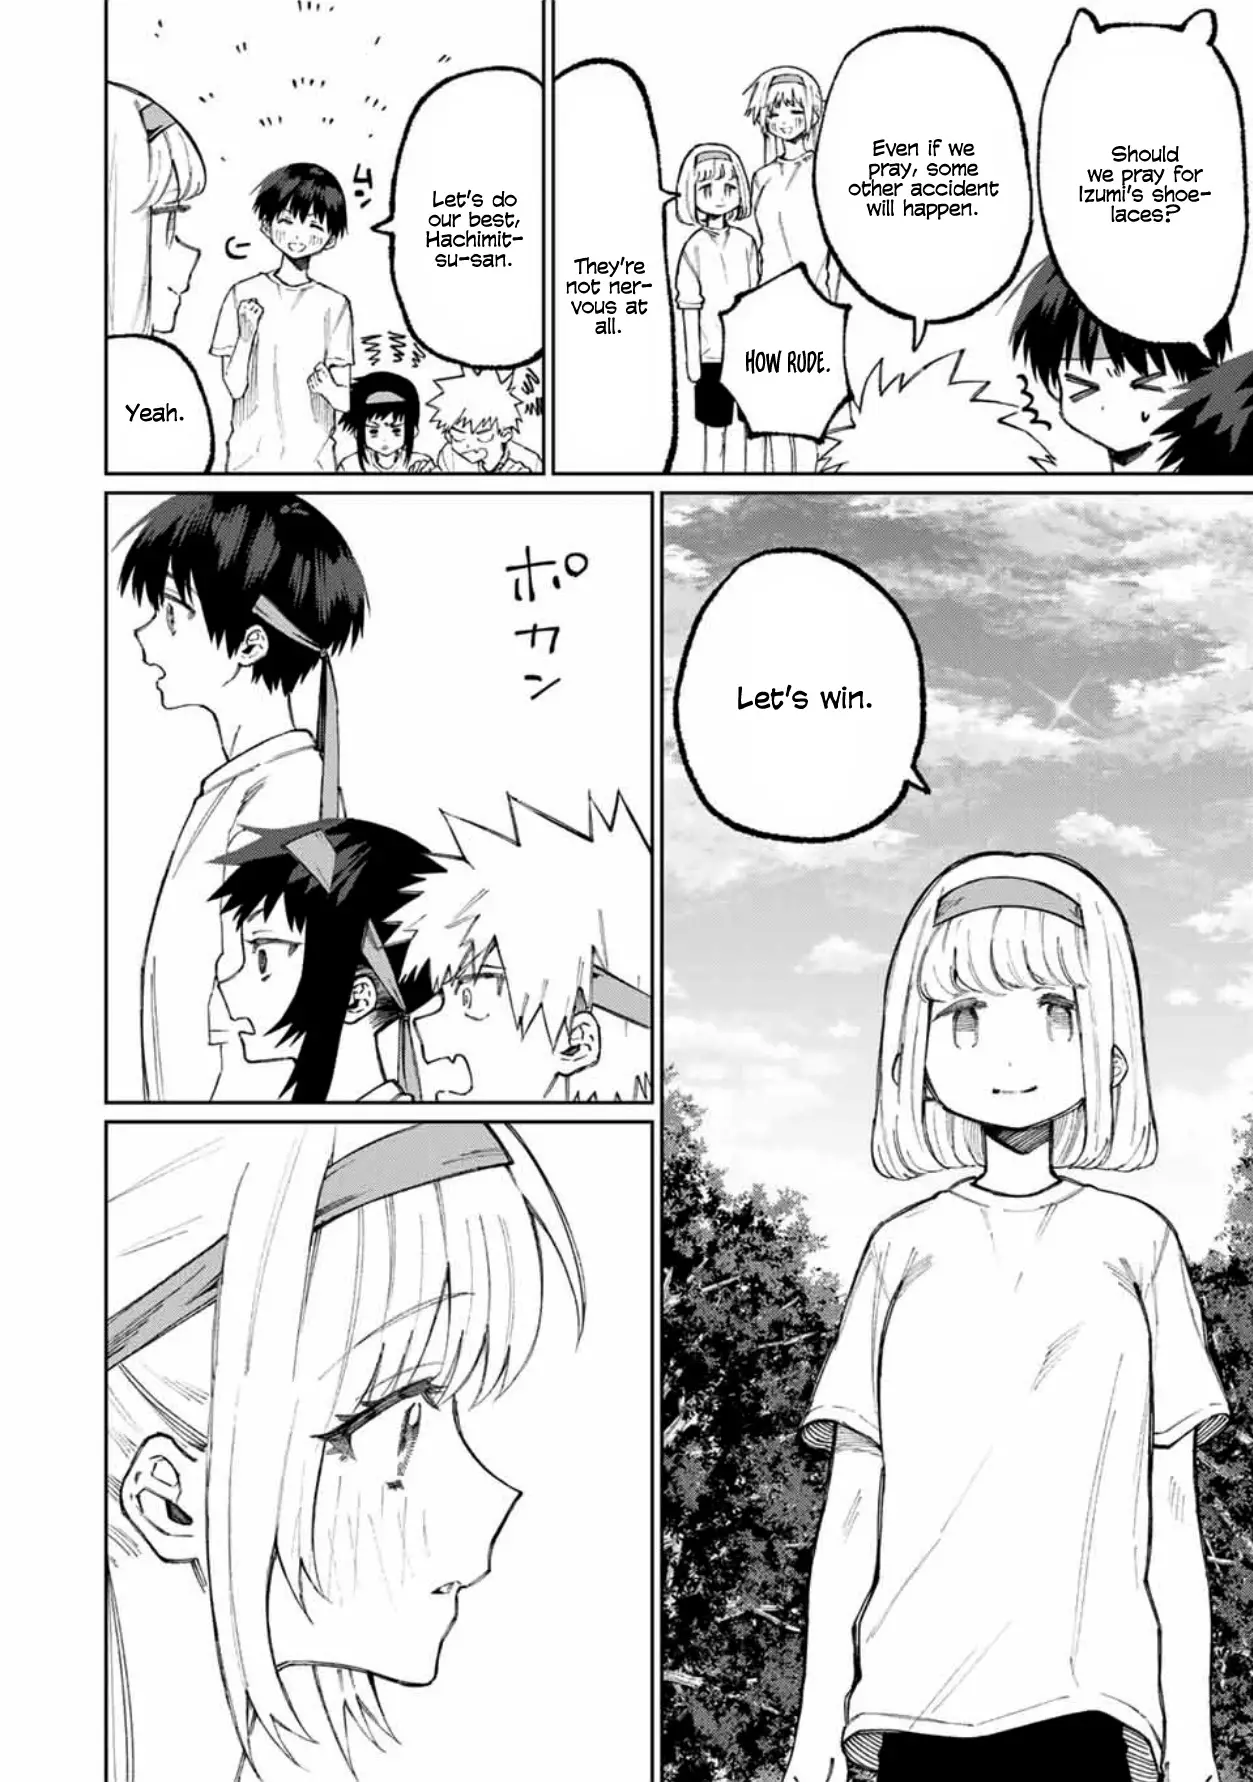 Shikimori's Not Just A Cutie - 53 page 3